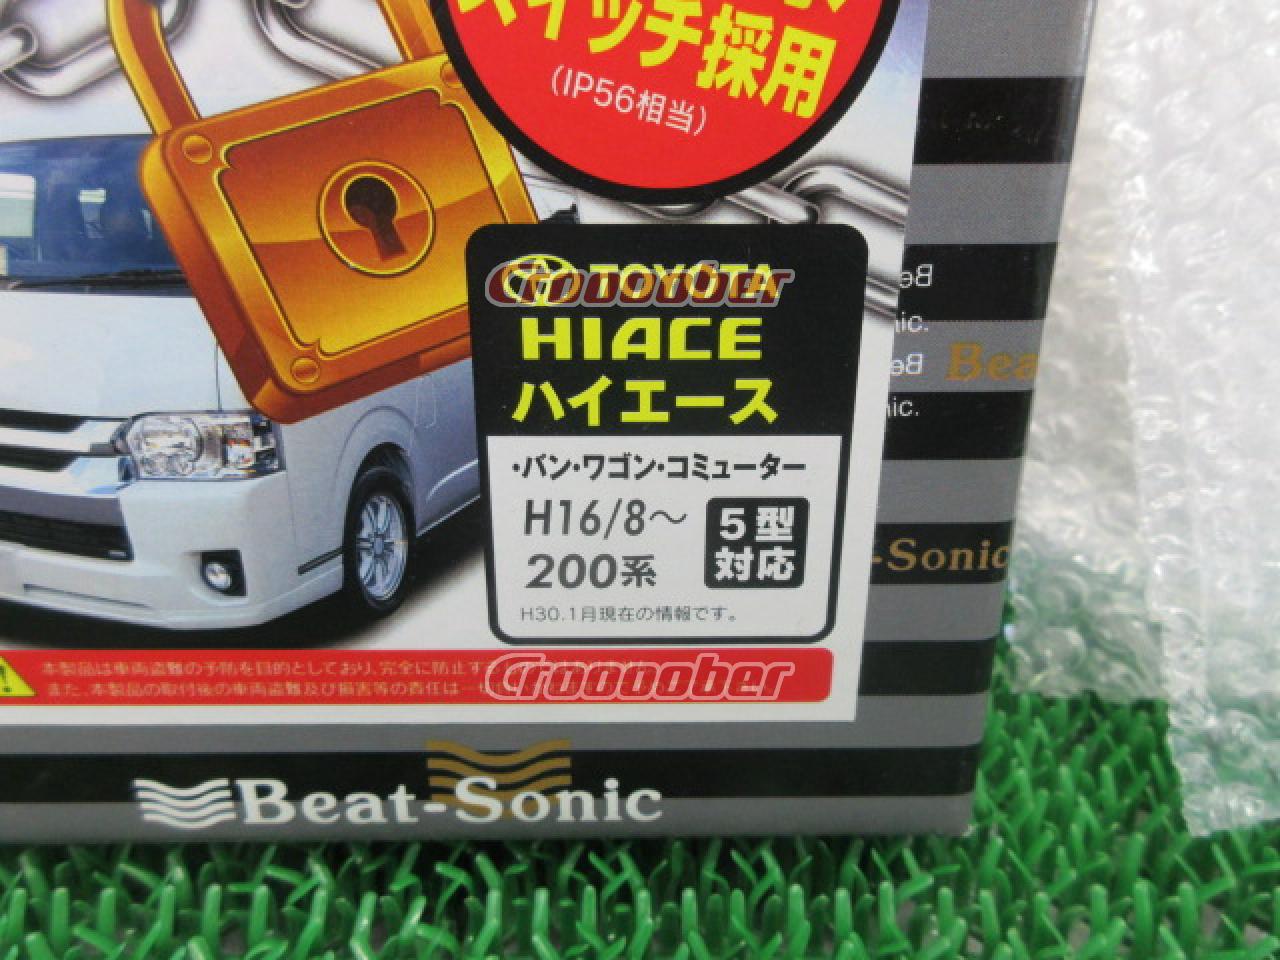 Beat-Sonic パトロック PLK10 トヨタ ハイエース200系 | 電装系 セキュリティパーツの通販なら | Croooober(クルーバー)